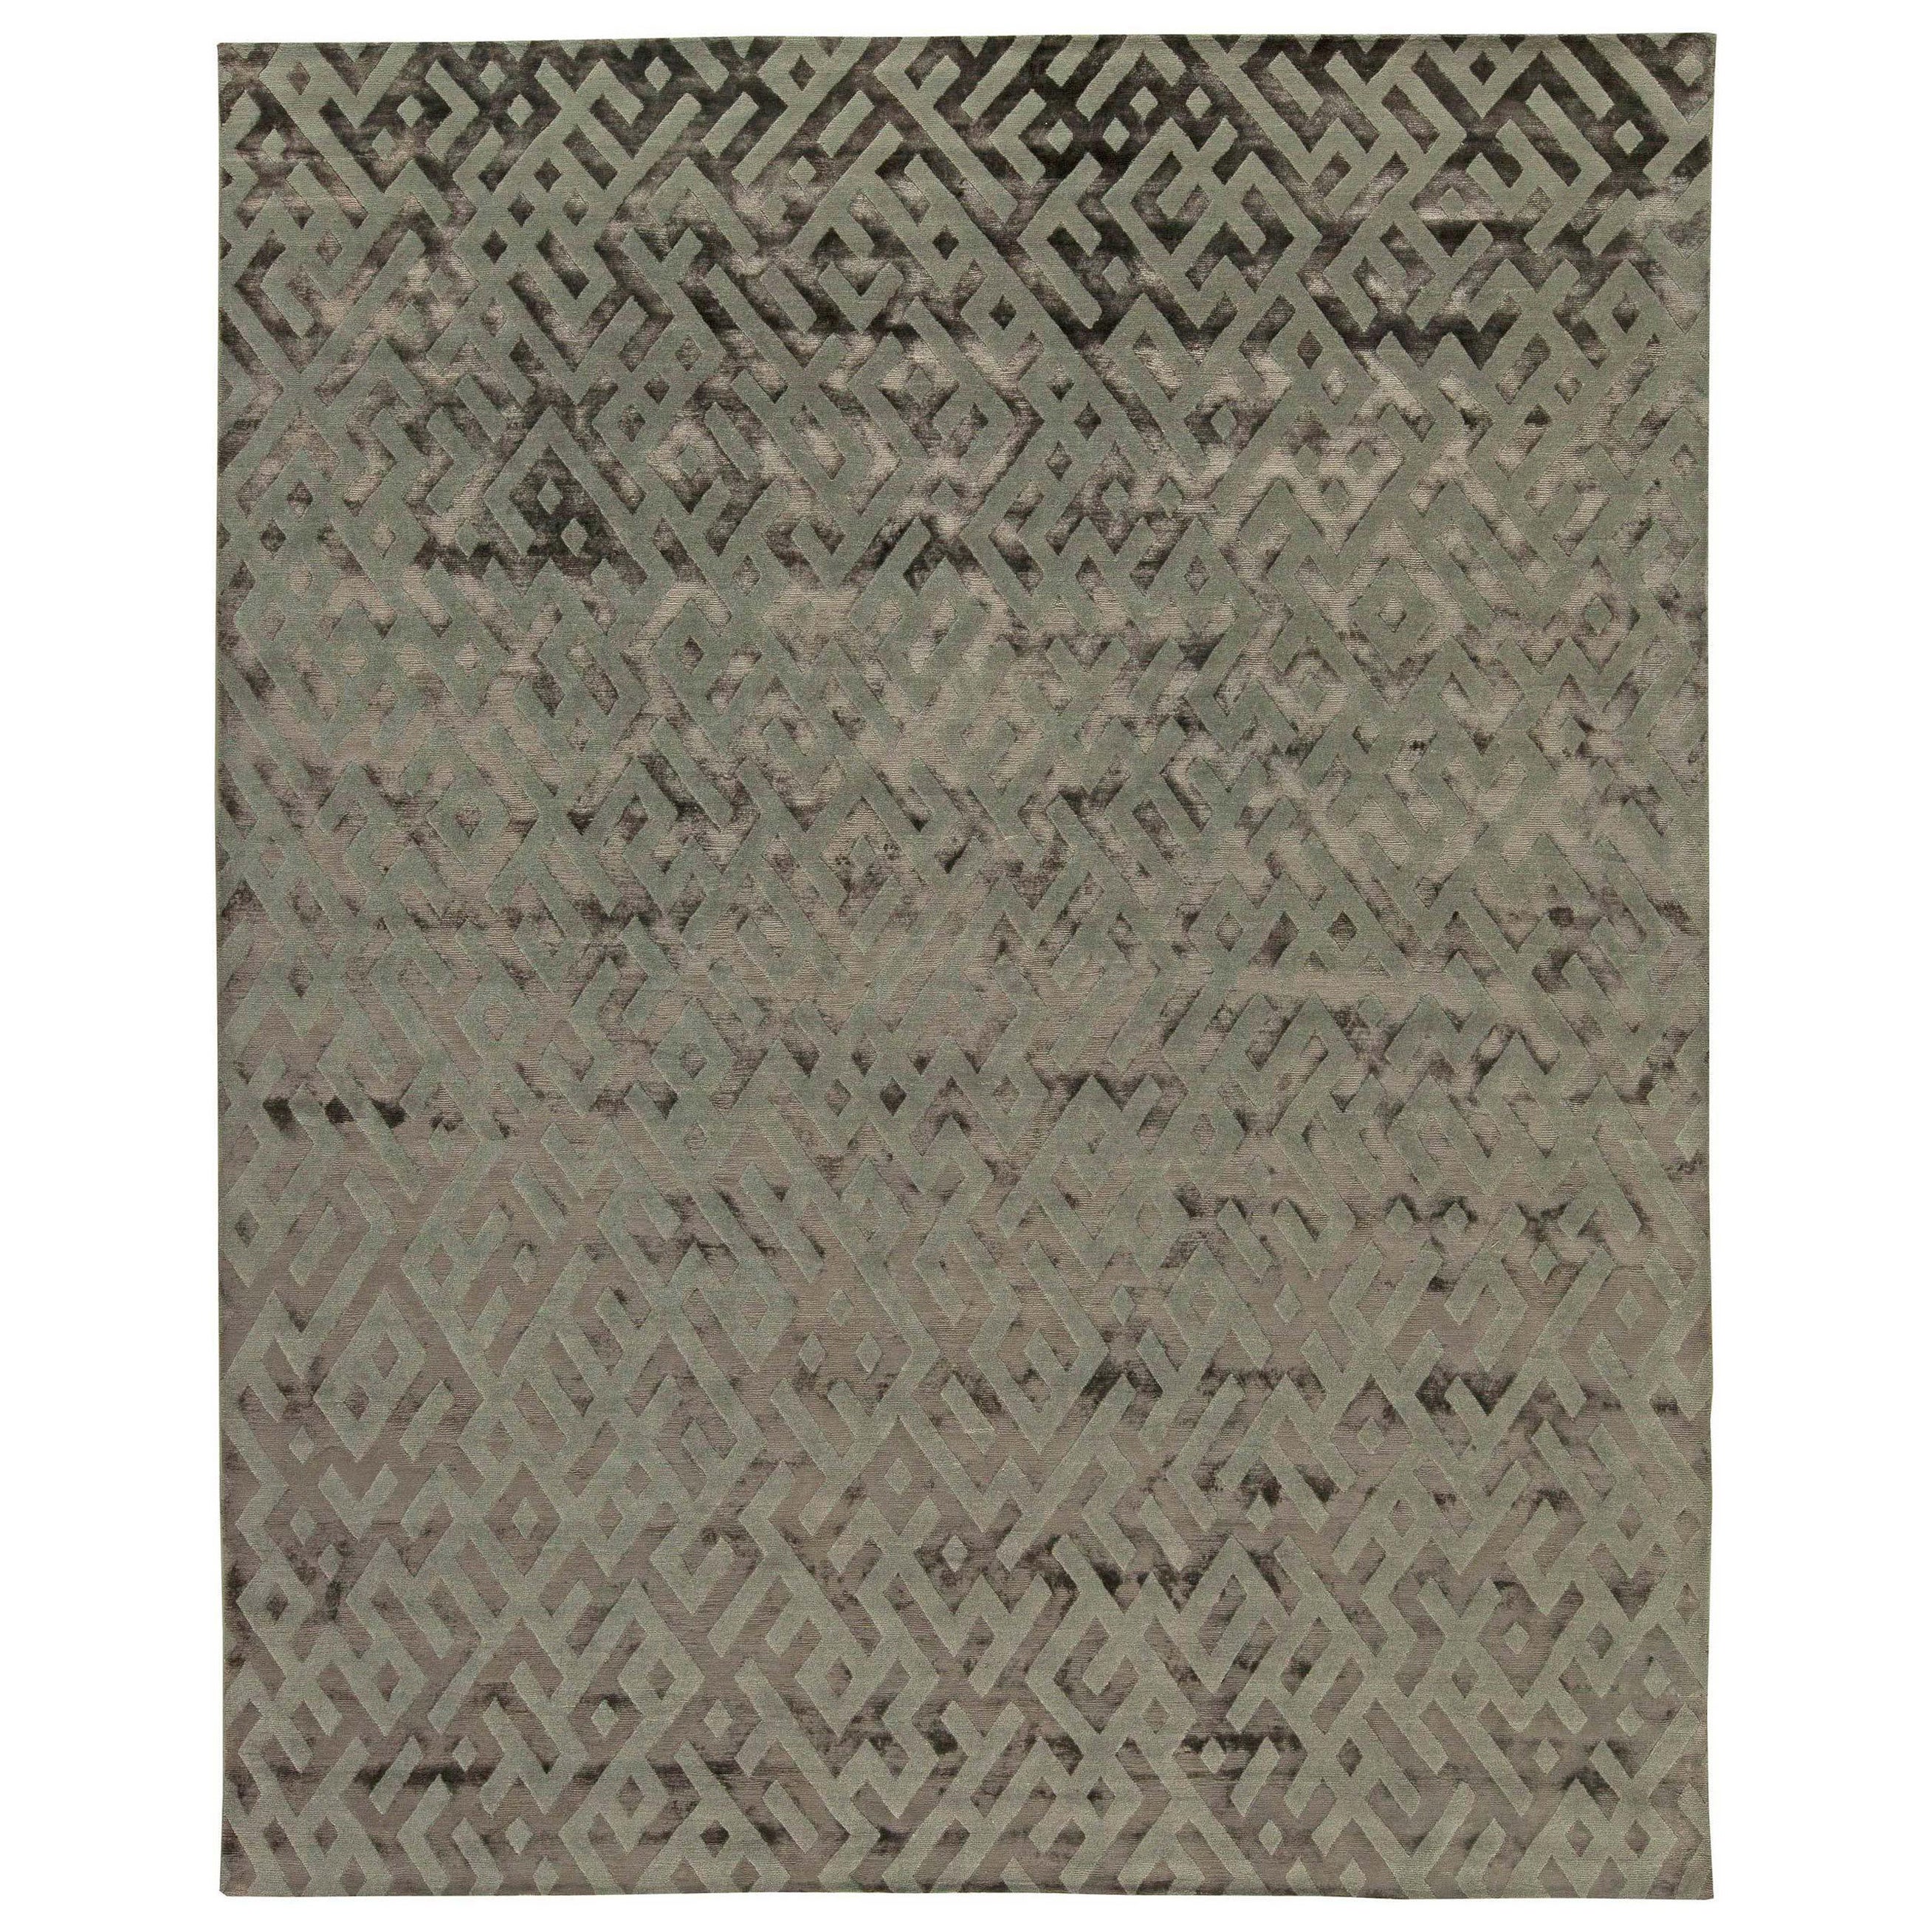 Tapis tibétain moderne géométrique gris fait à la main par Doris Leslie Blau